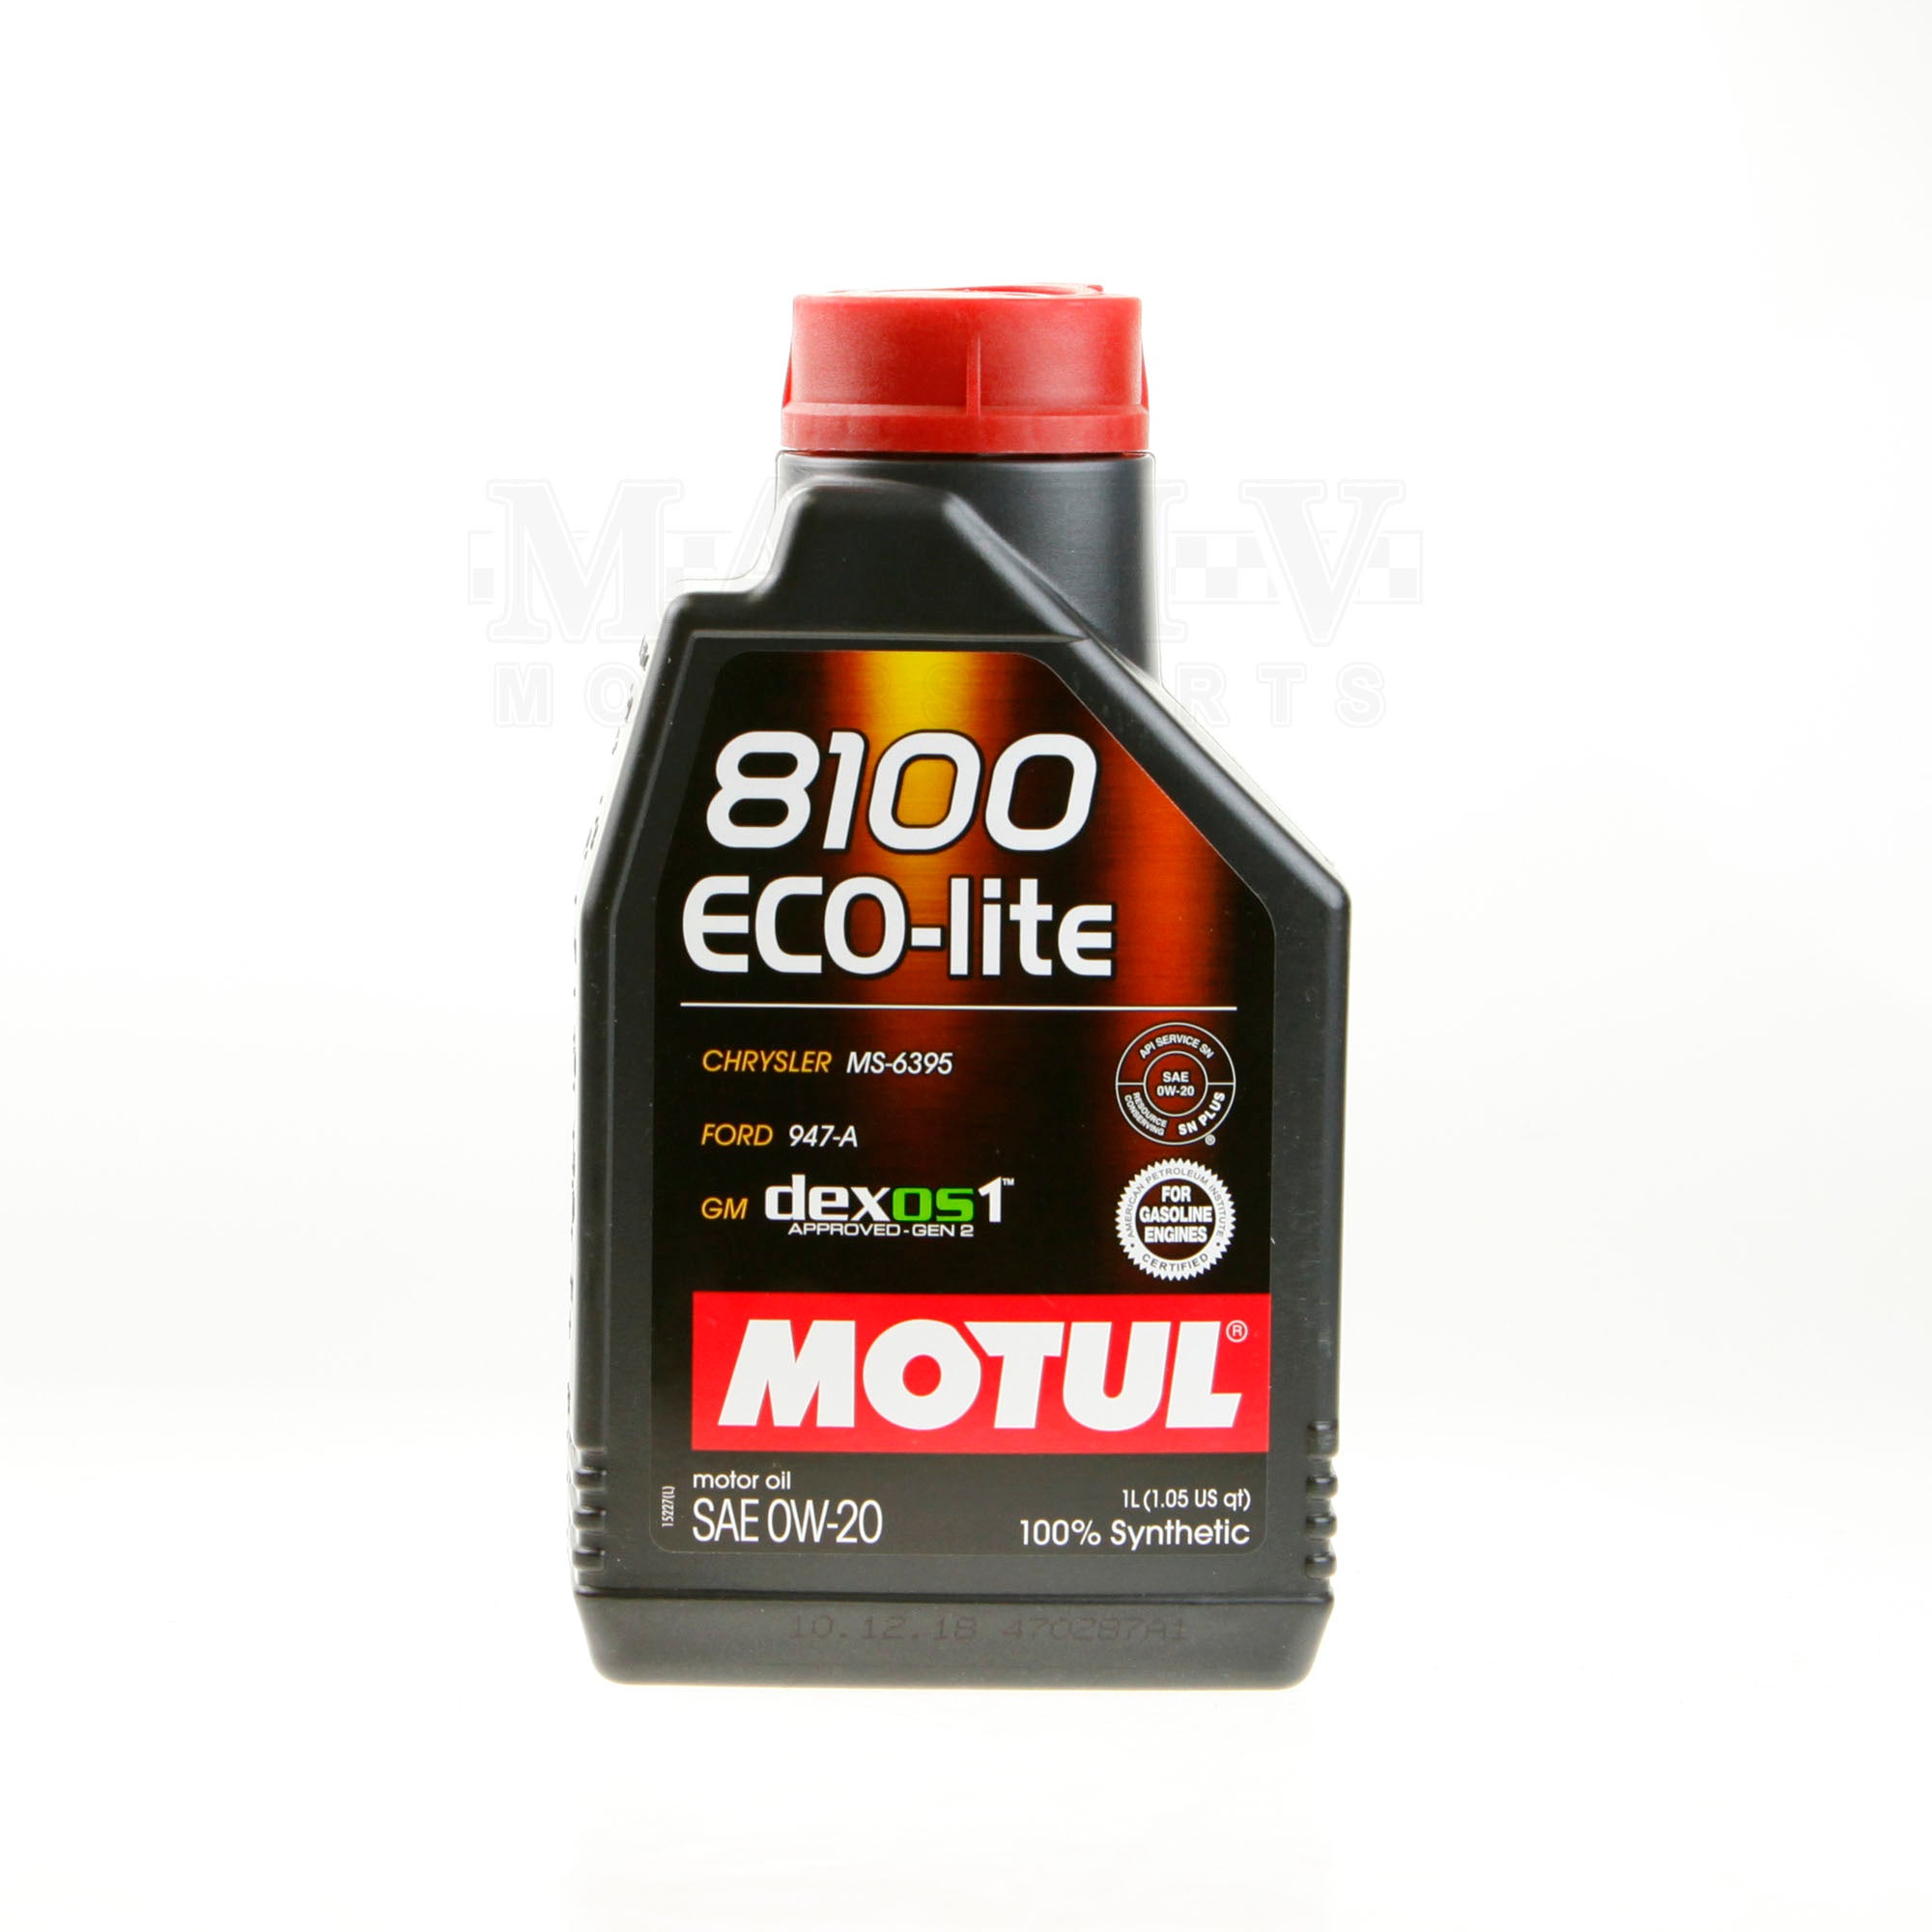 Motul 0W20 ECO-lite Motor Oil 1 Liter Bottle